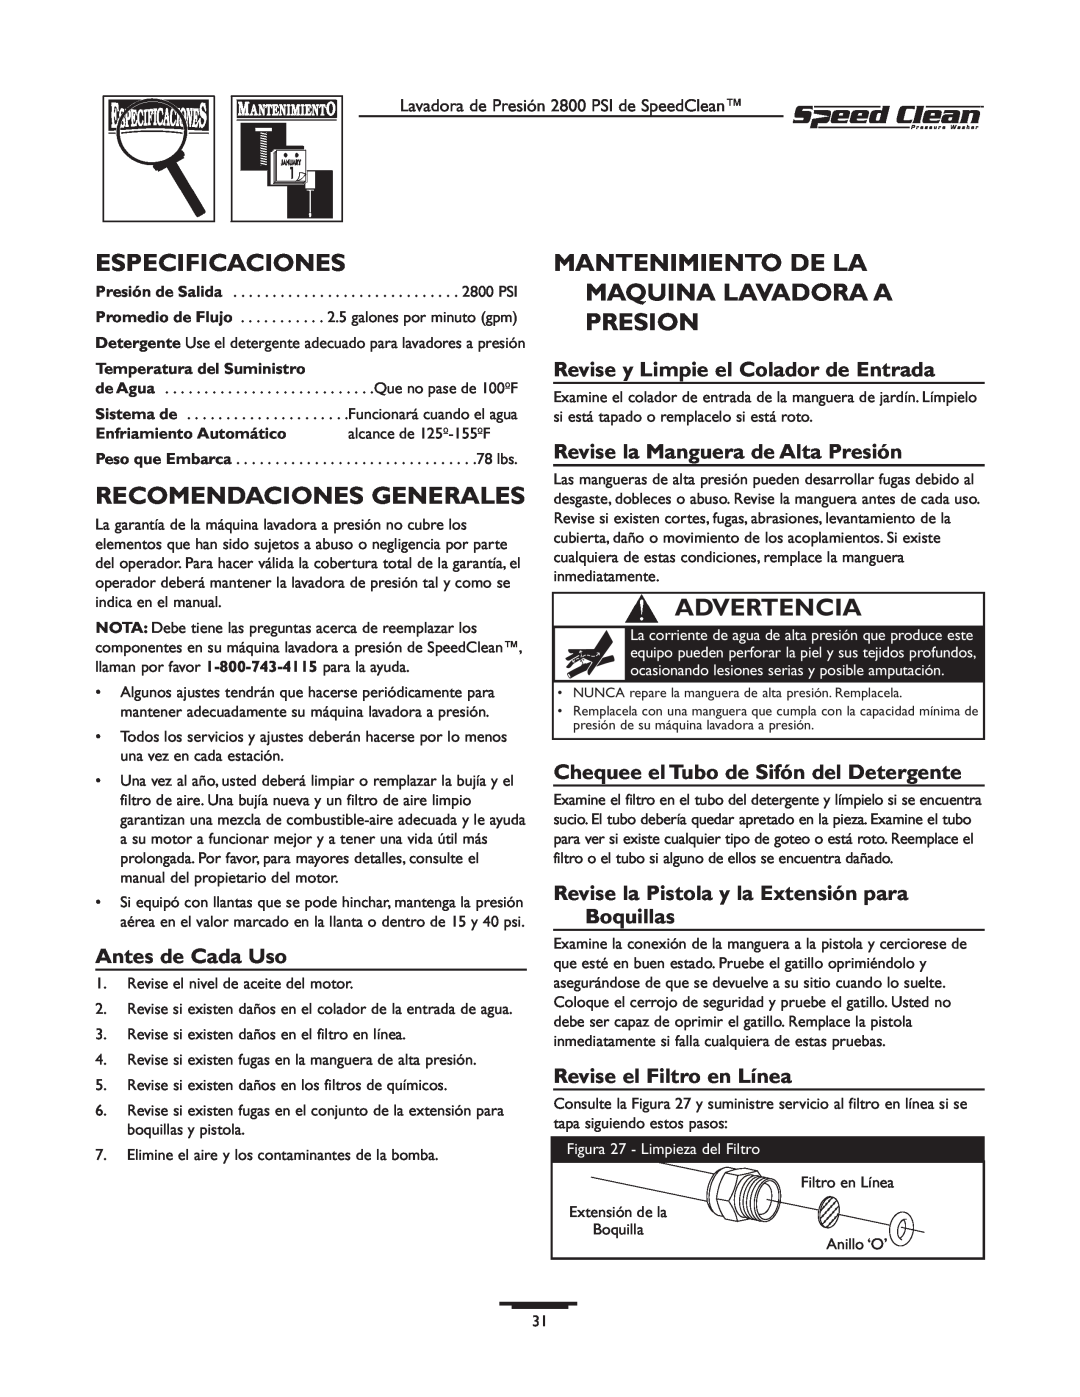 Briggs & Stratton 020212-0 Especificaciones, Recomendaciones Generales, Mantenimiento De La Maquina Lavadora A Presion 